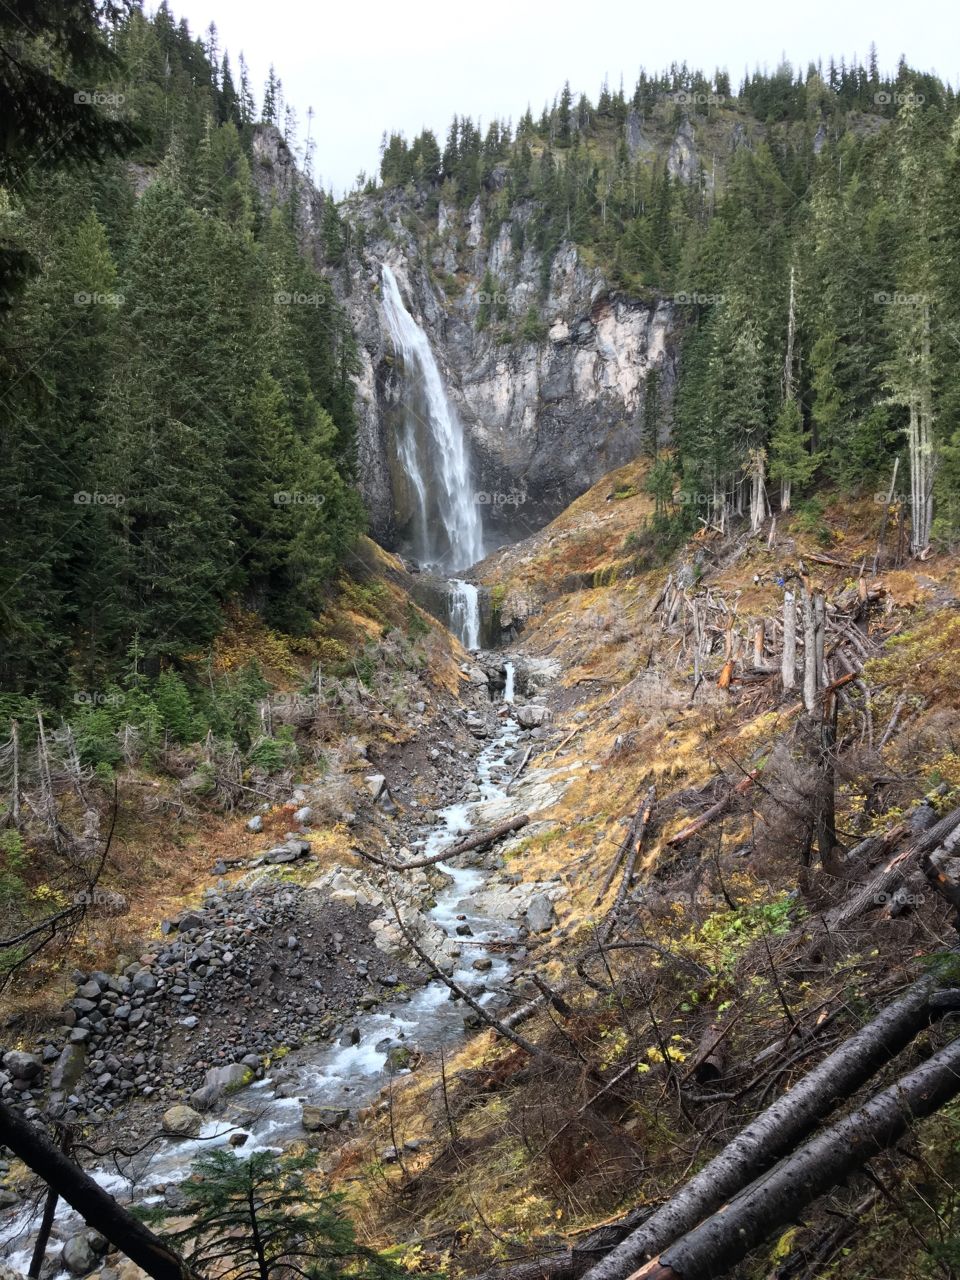 Waterfall on Mt Rainer in Seattle Washington 